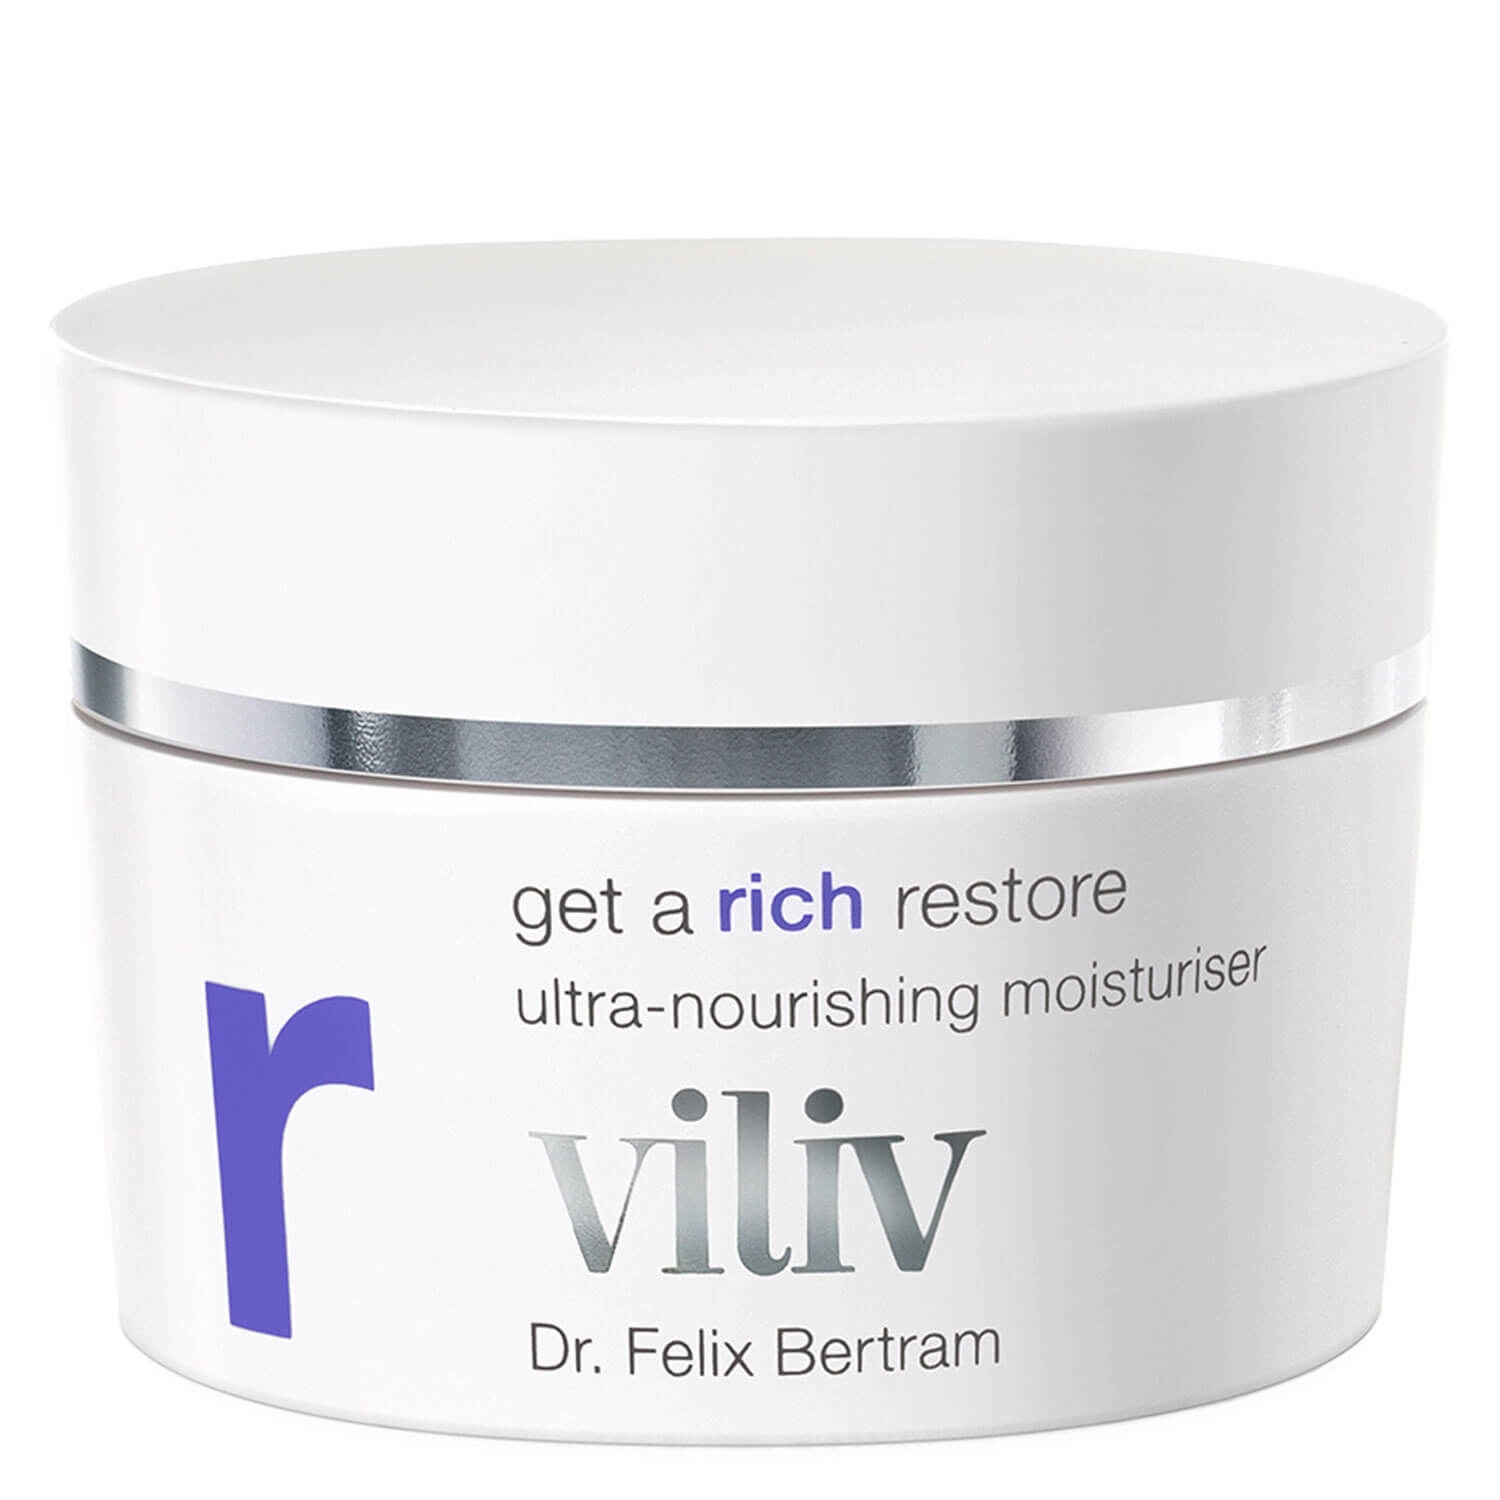 Produktbild von viliv - get a rich restore ultra-nourishing moisturiser